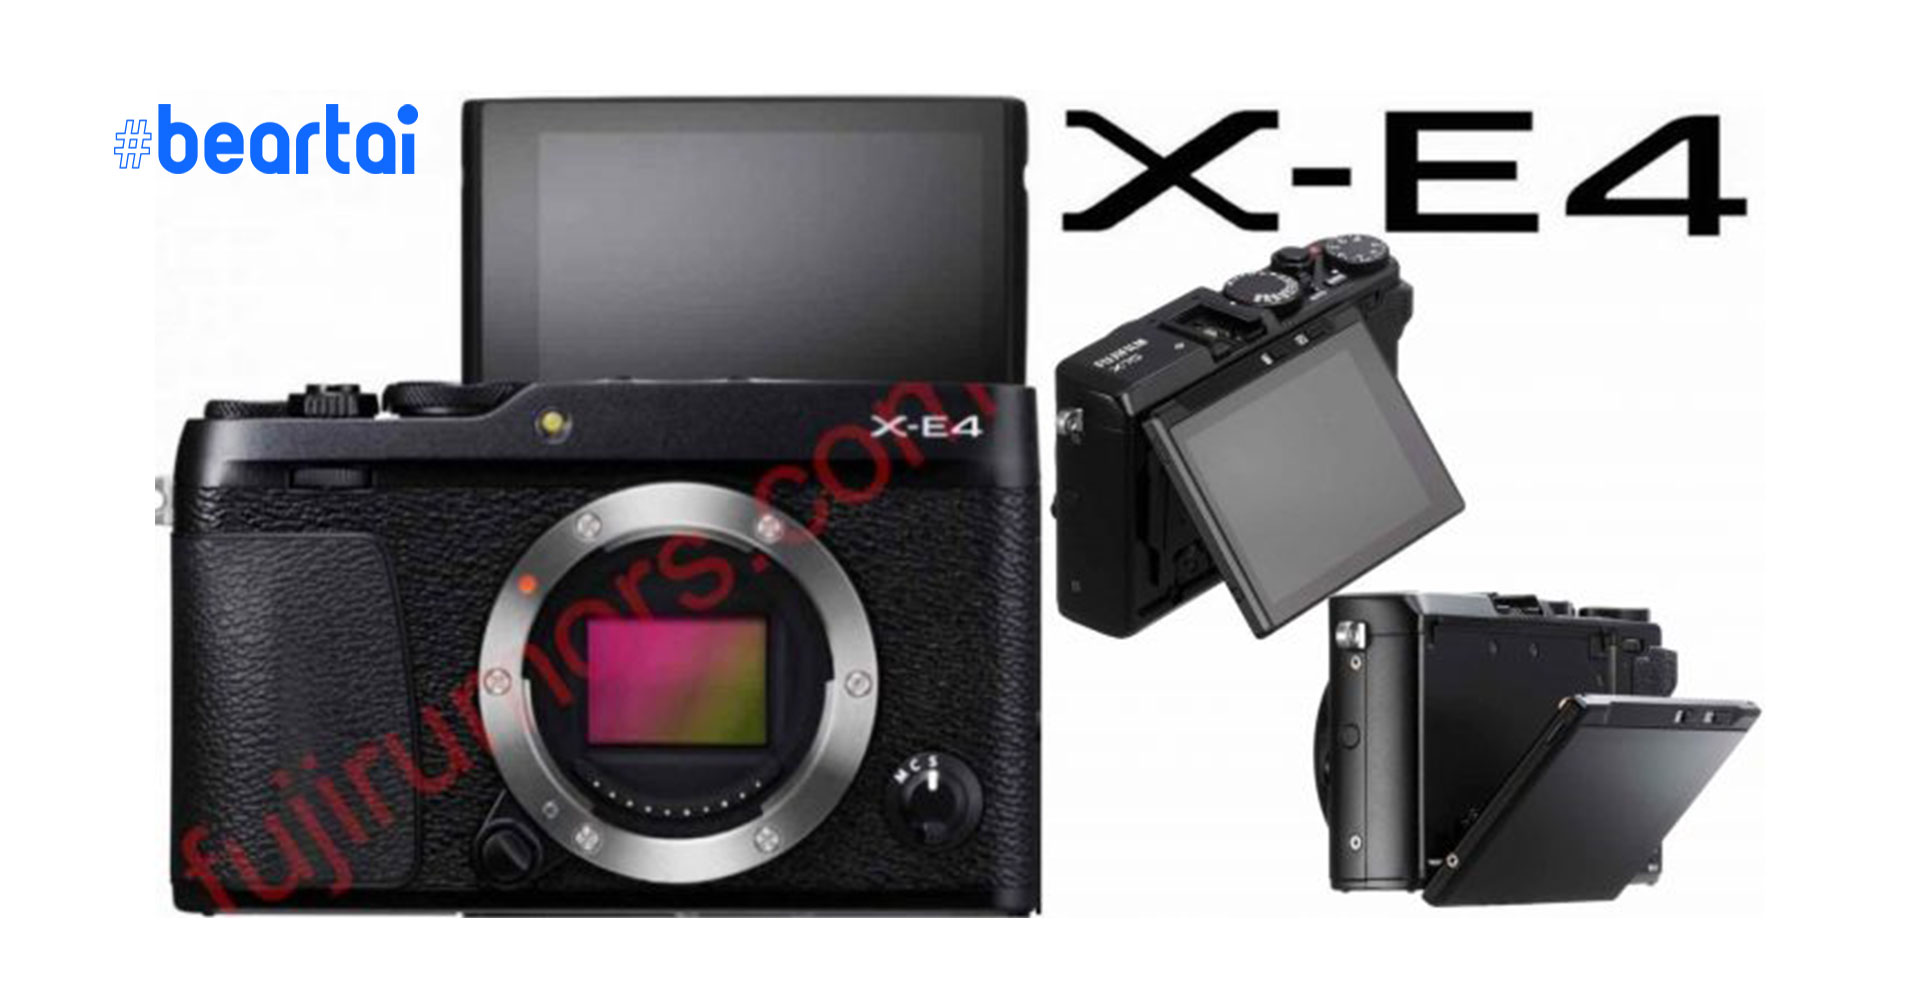 ลือ Fujifilm X-E4 จะมาพร้อมจอ Tilt พับขึ้นเซลฟีได้ คล้ายรุ่น X70